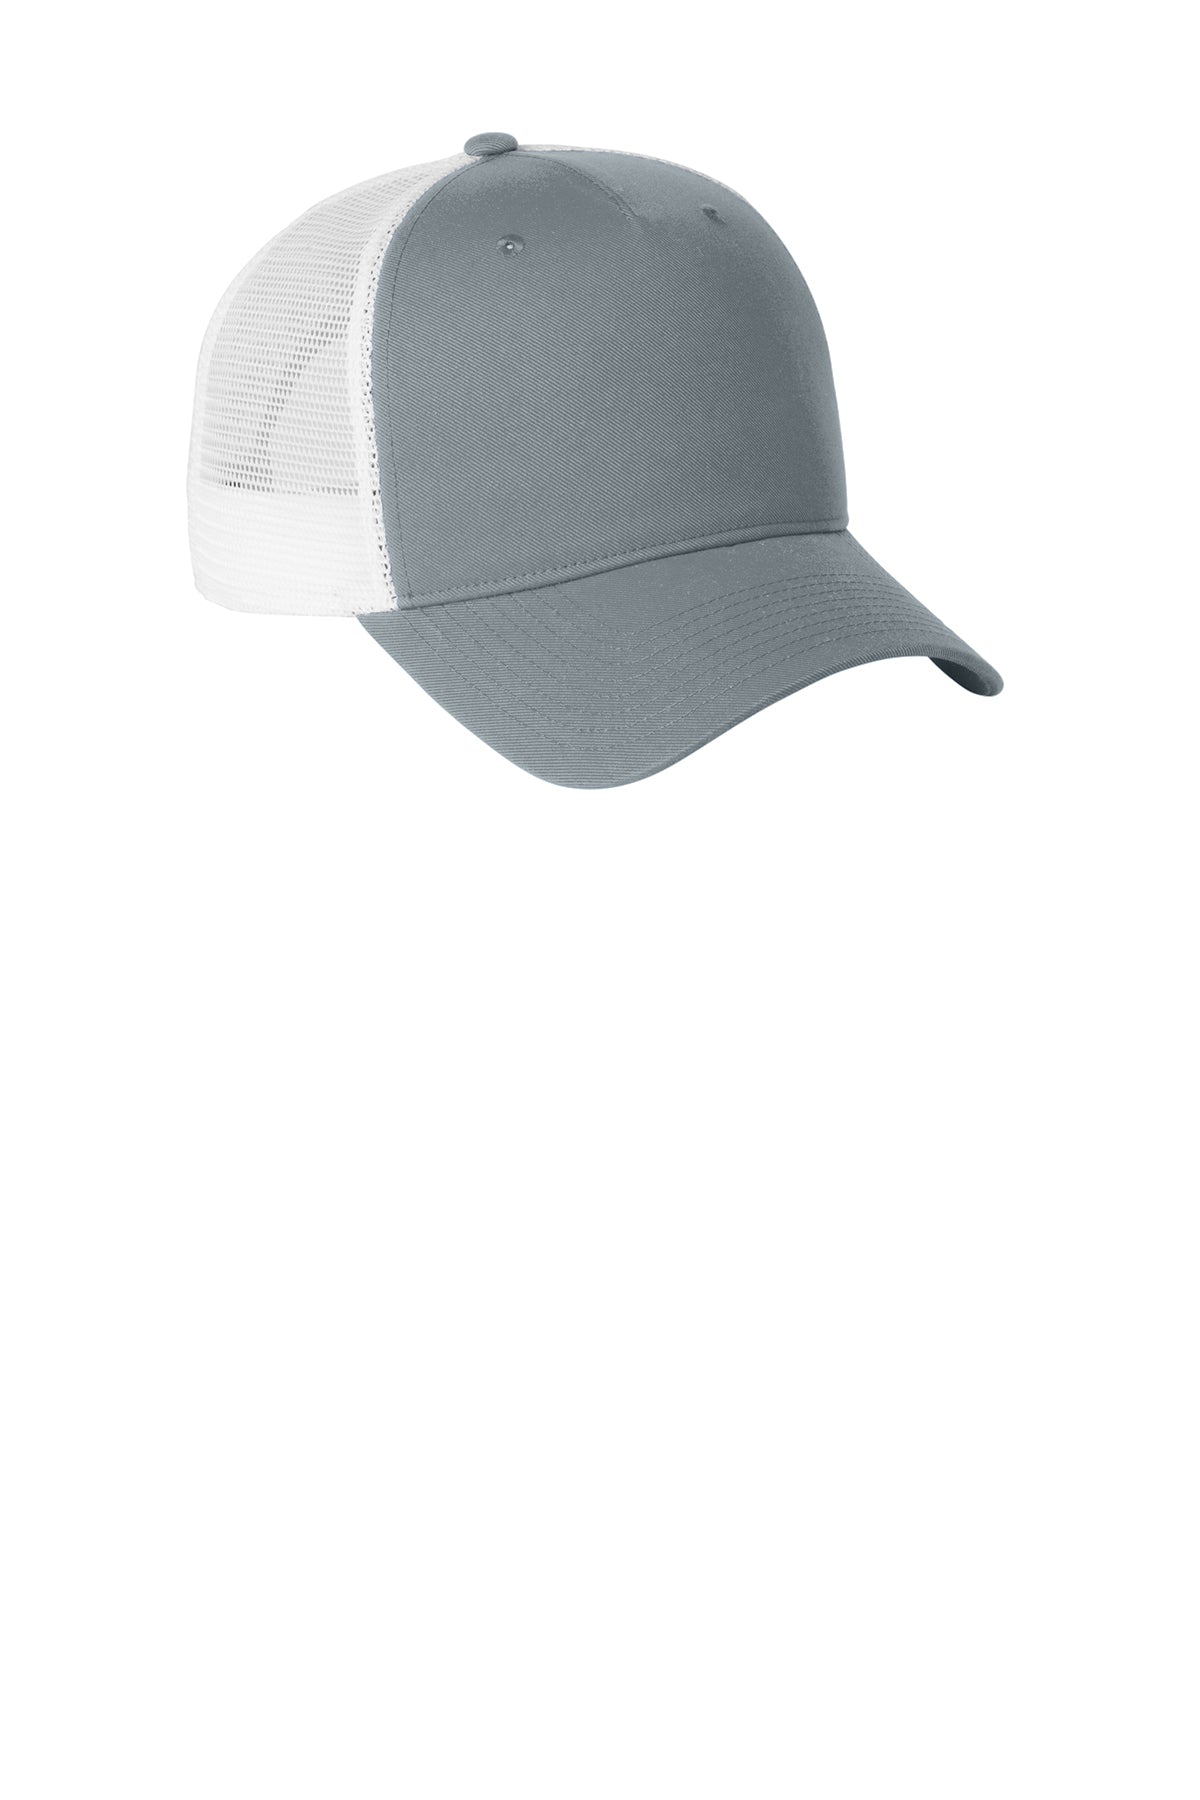 Nike Snapback Mesh Trucker Custom Caps, Cool Grey / White